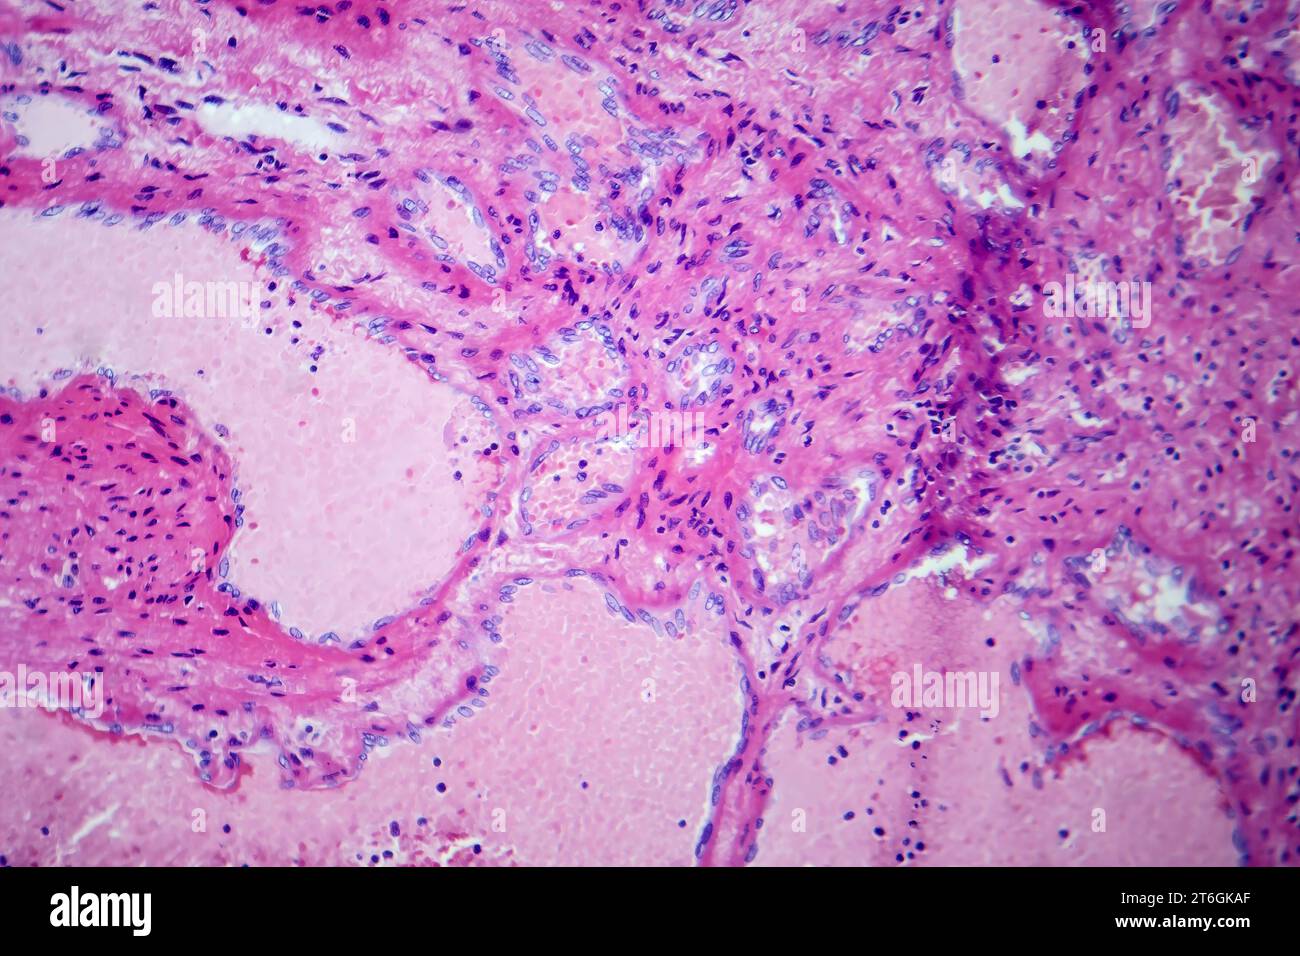 Fotomicrografia di emangioma cavernoso epatico, raffigurante vasi sanguigni dilatati nel tessuto epatico, caratteristica di un tumore benigno. Foto Stock